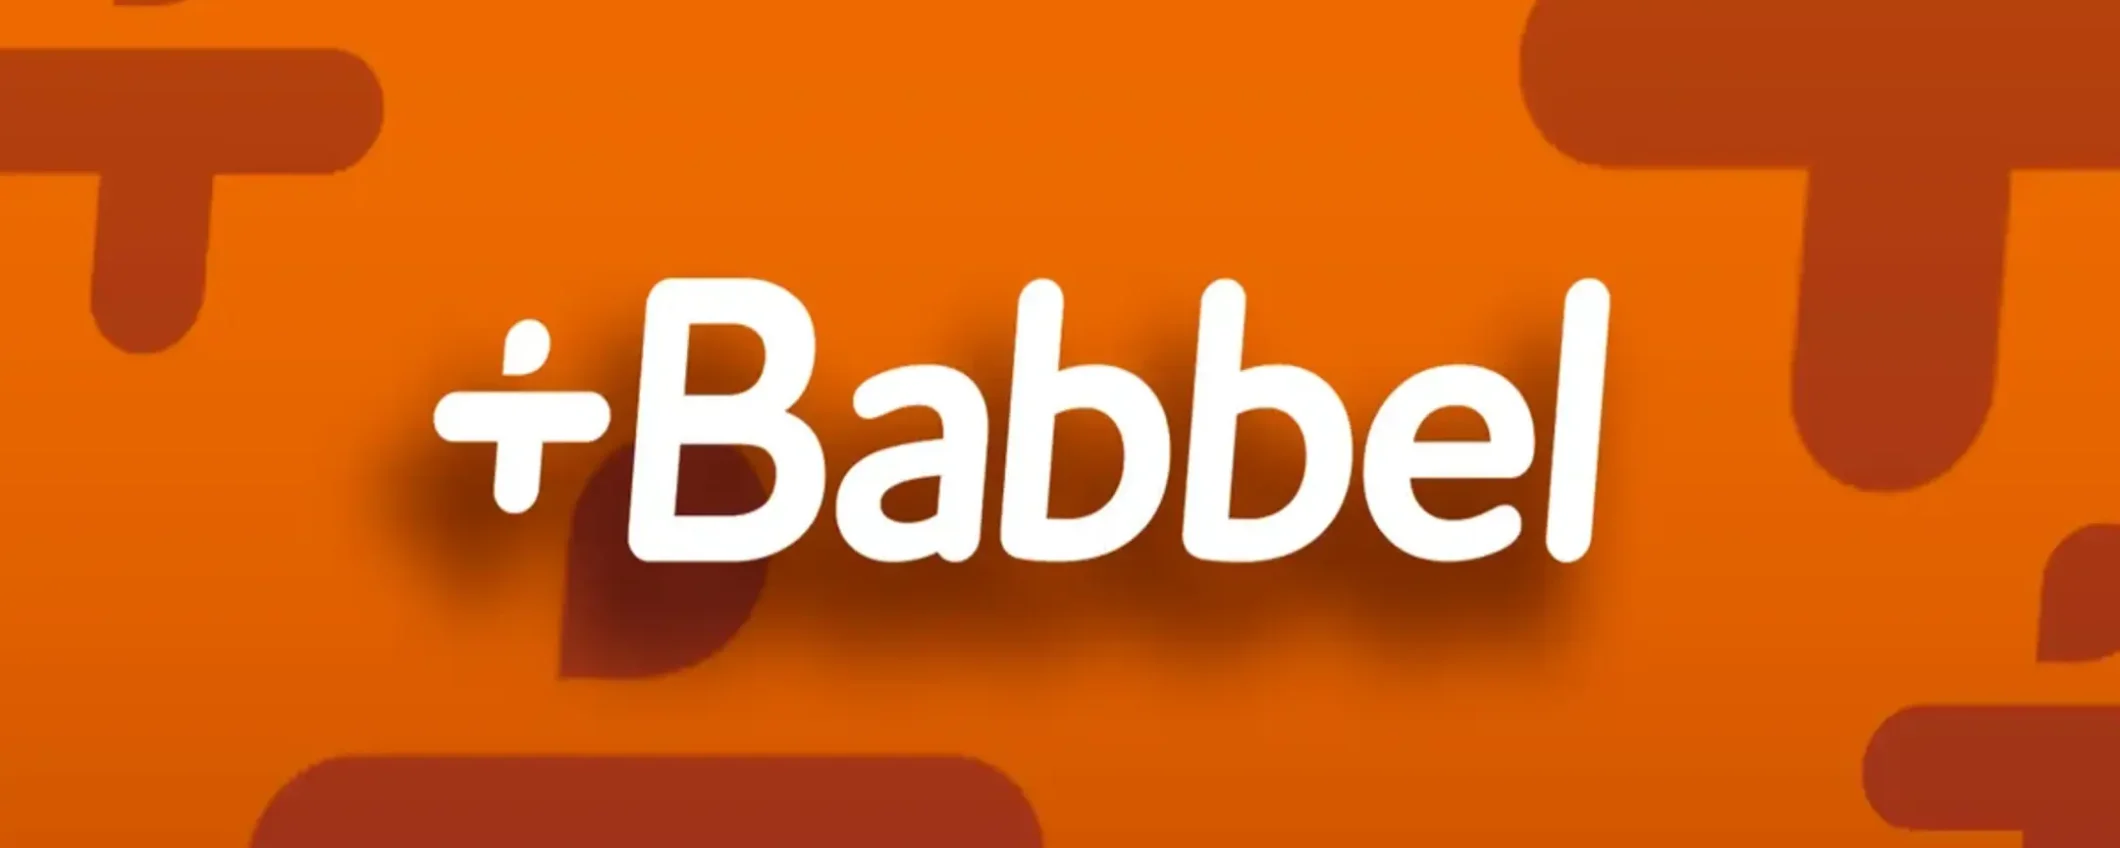 Impara le lingue facilmente con Babbel: abbonati adesso